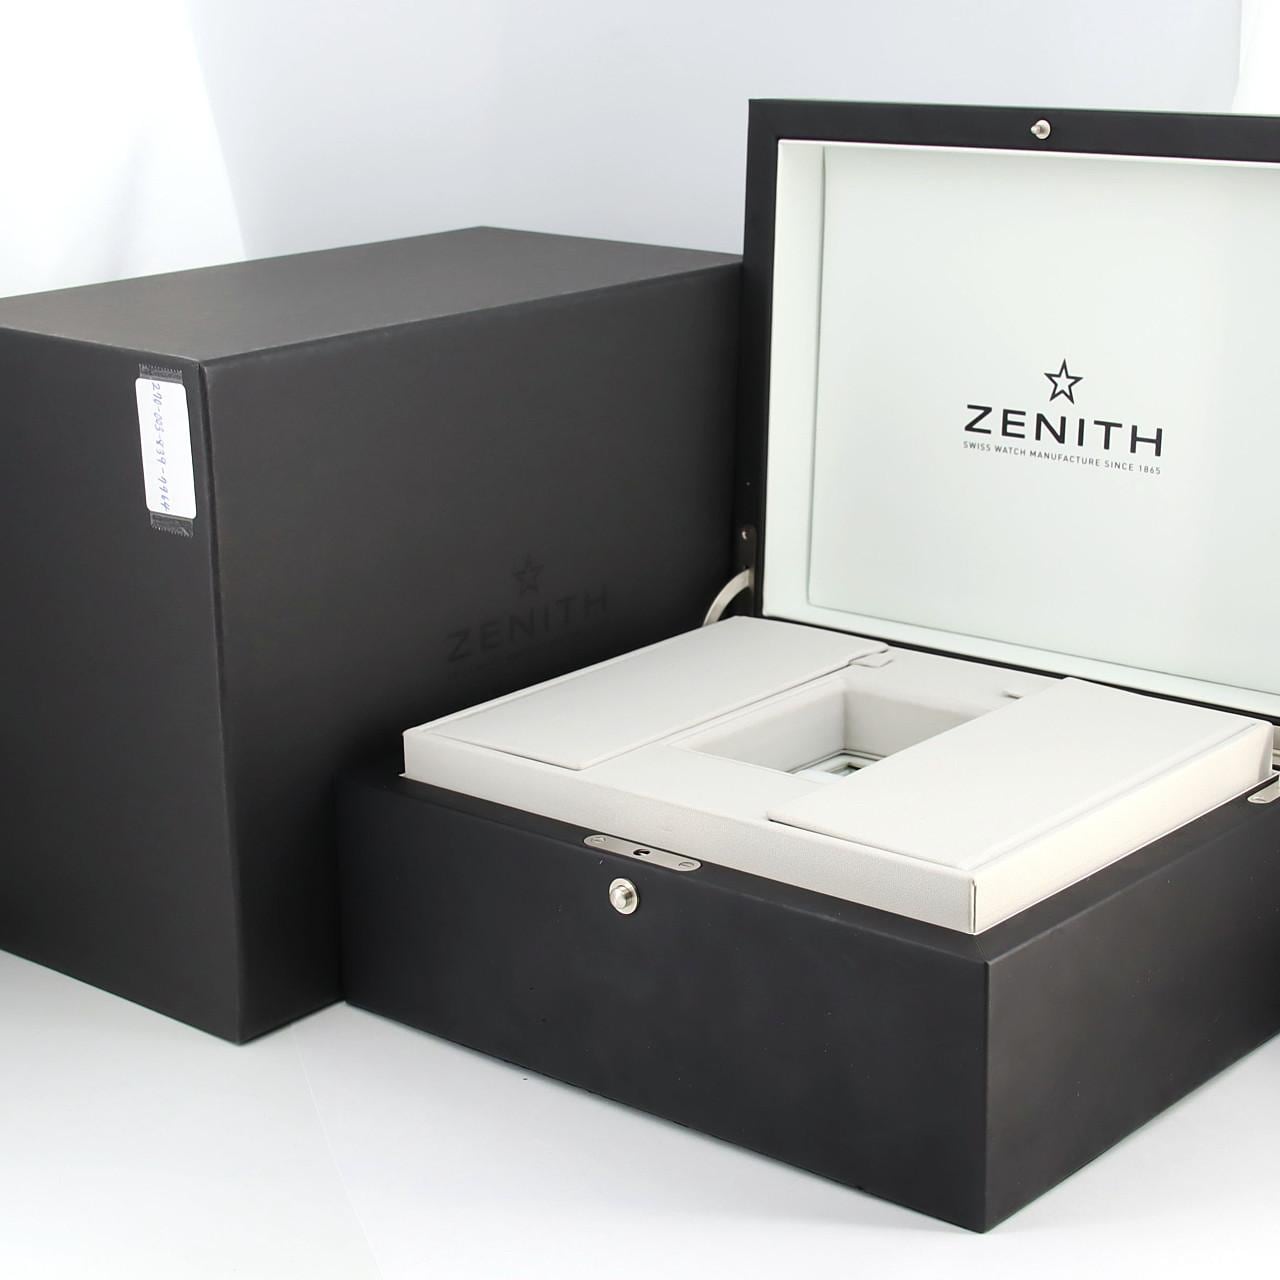 Zenith Defy Extreme TI 97.9100.9004/02.I001 TI Automatic